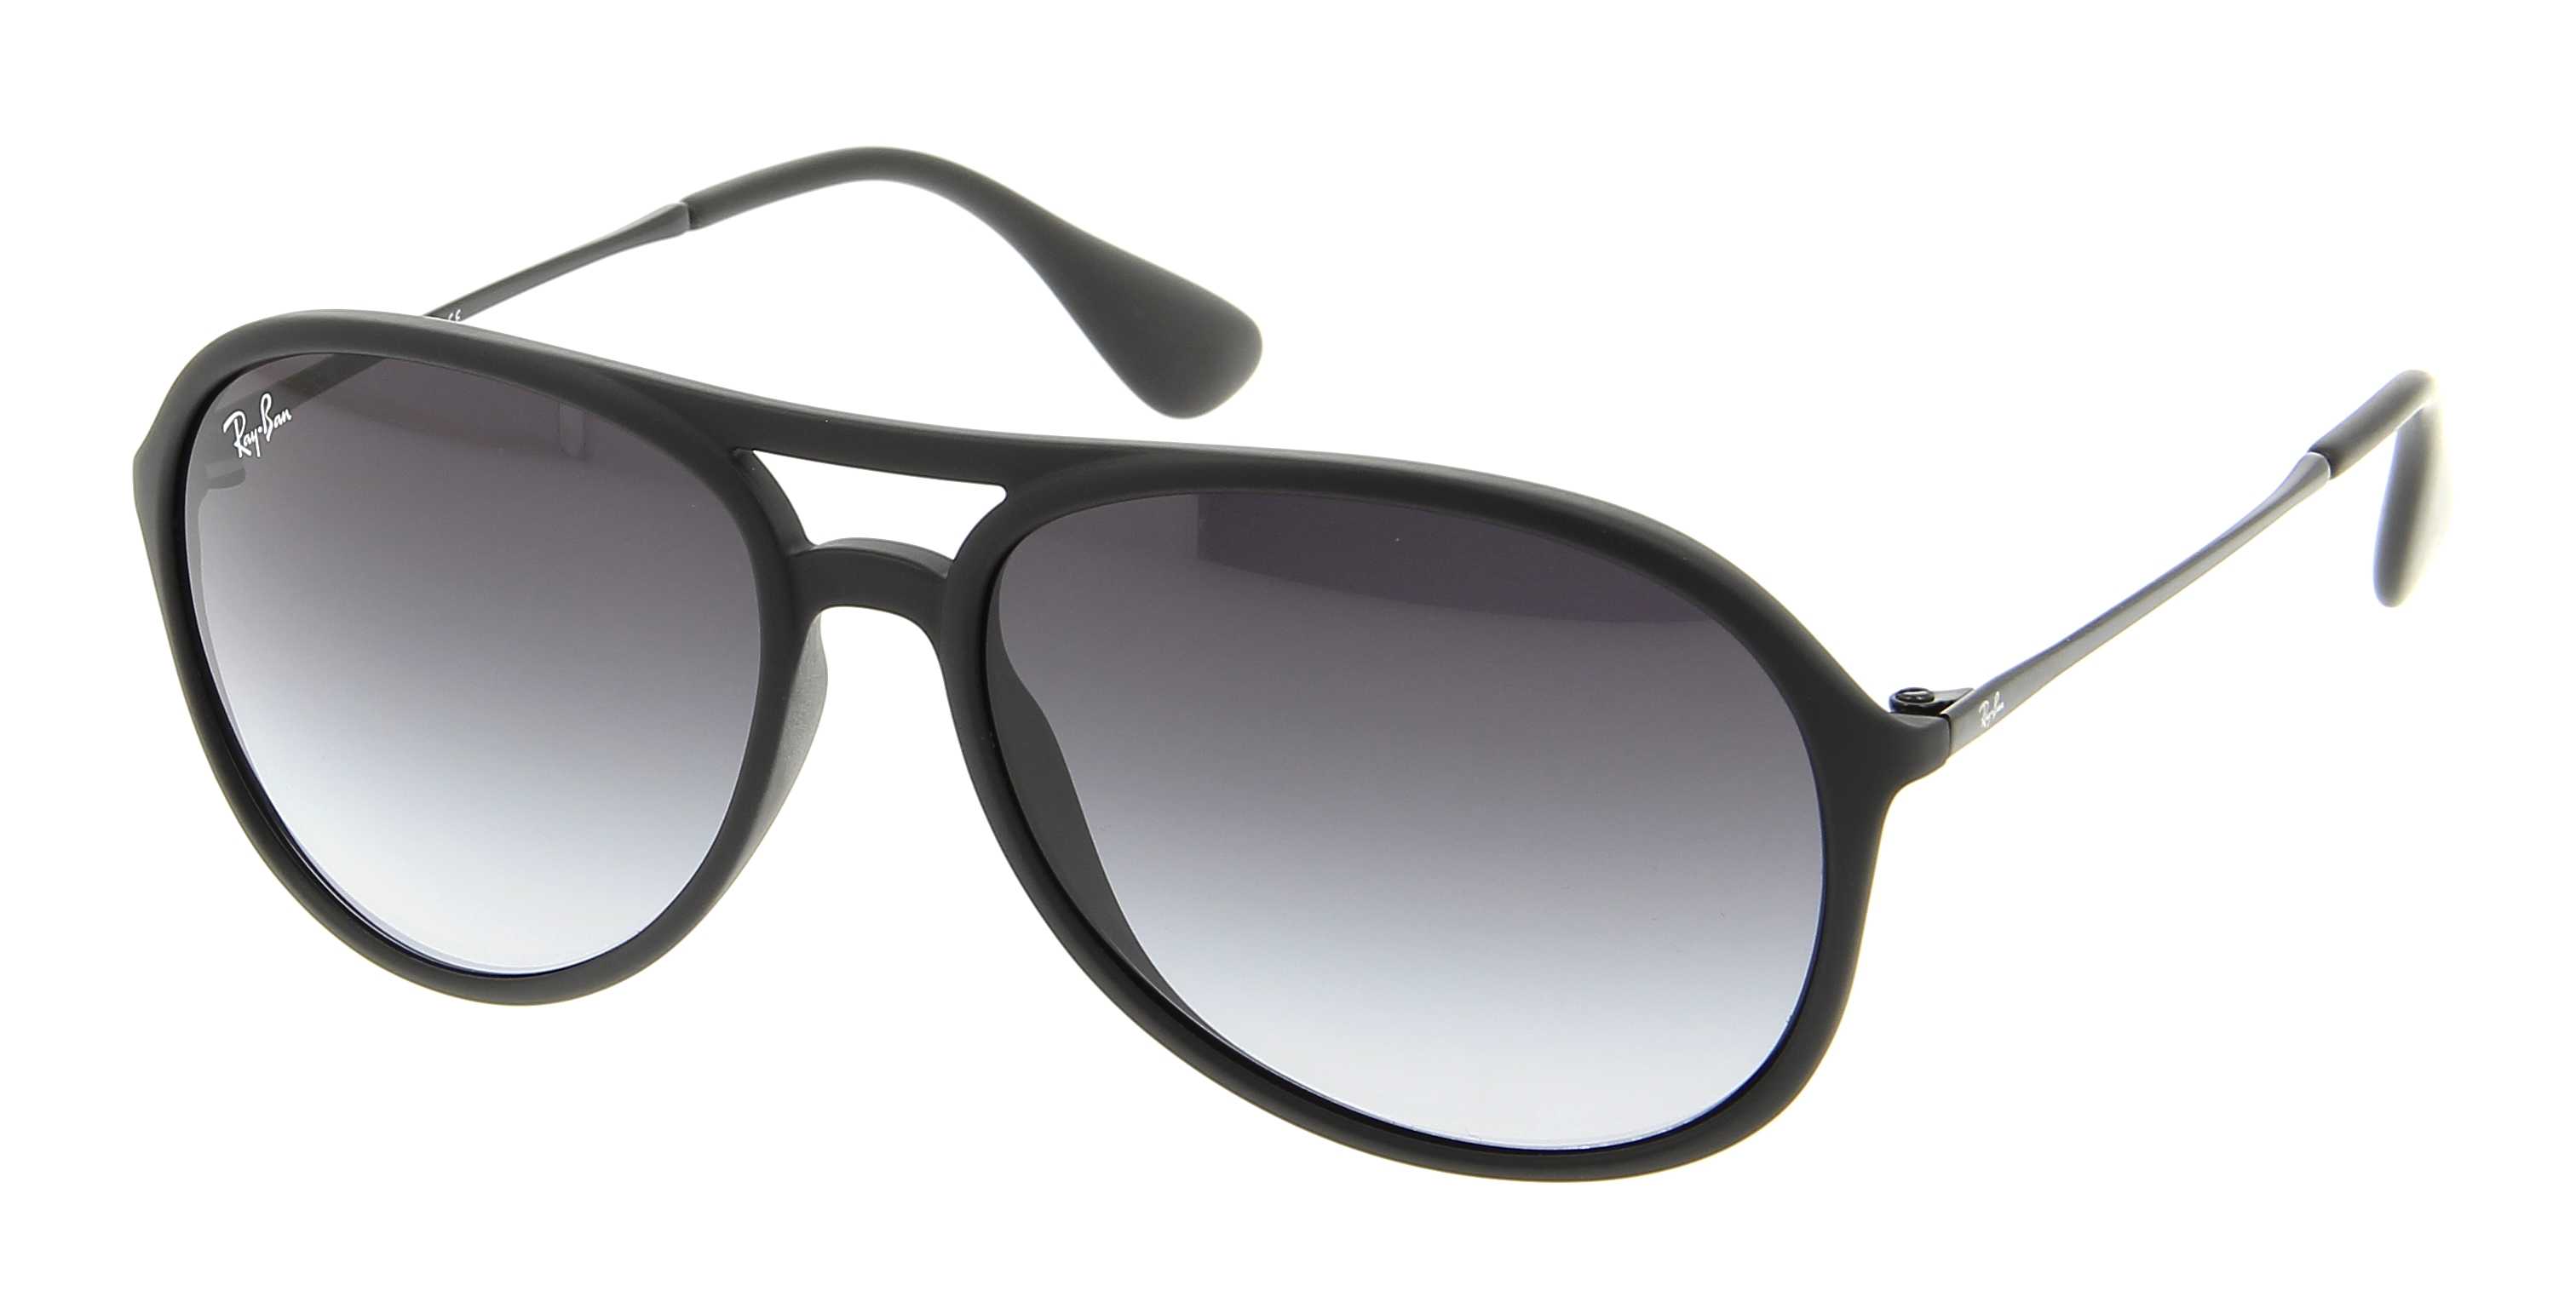 Sunglasses RAY-BAN RB 4201 622/8G Alex 59/15 Man Noir gomme Aviator frames  Full Frame Glasses trendy 59mmx15mm 116$CA